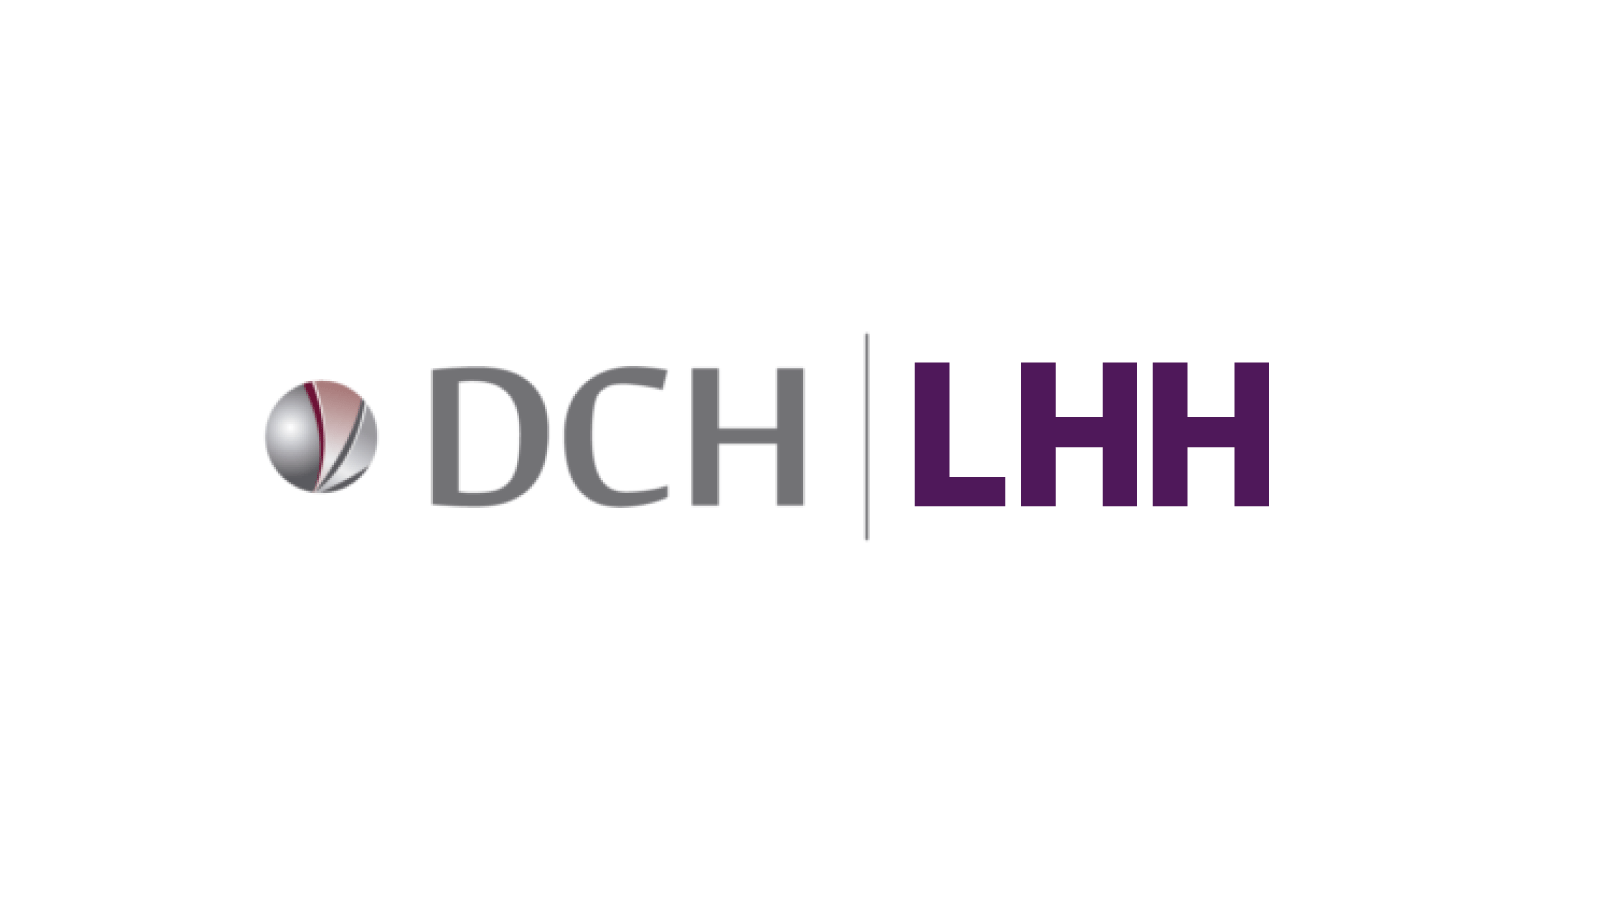 Loco DCH y LHH